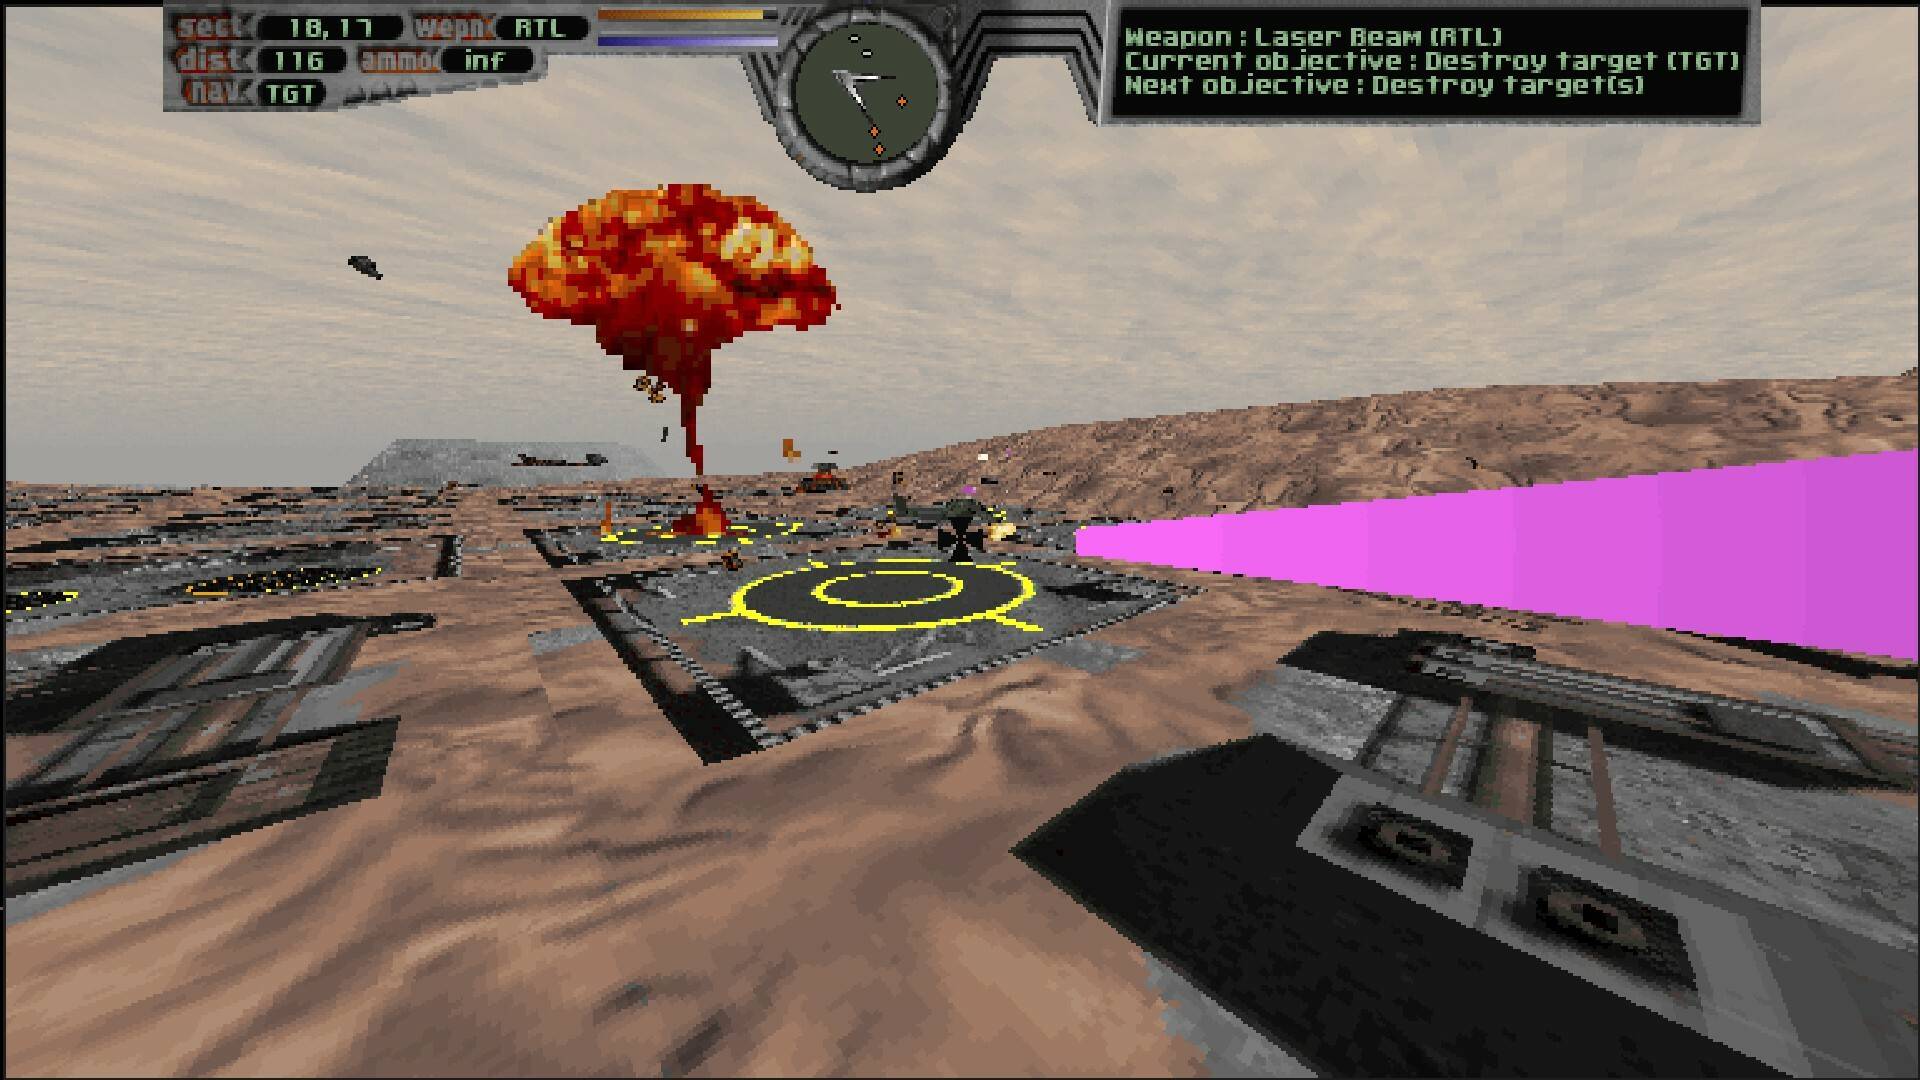 飞行模拟器游戏推荐苹果版:29年前的经典飞行模拟游戏《终极速度》即将推出增强版-第4张图片-太平洋在线下载